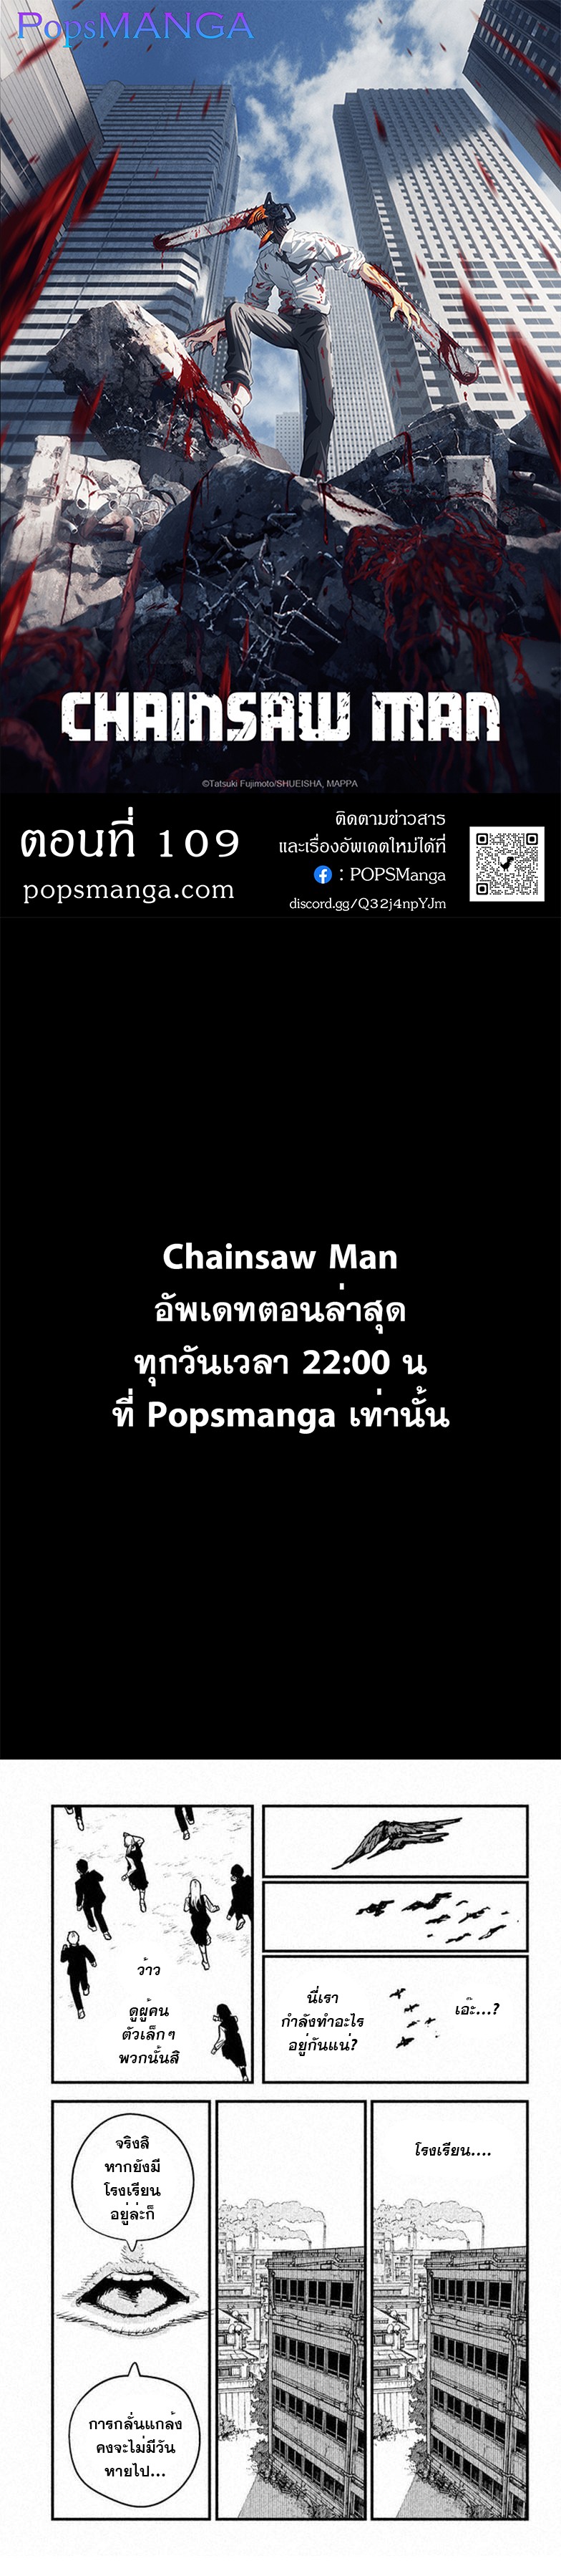 Chainsaw Man109 (1)